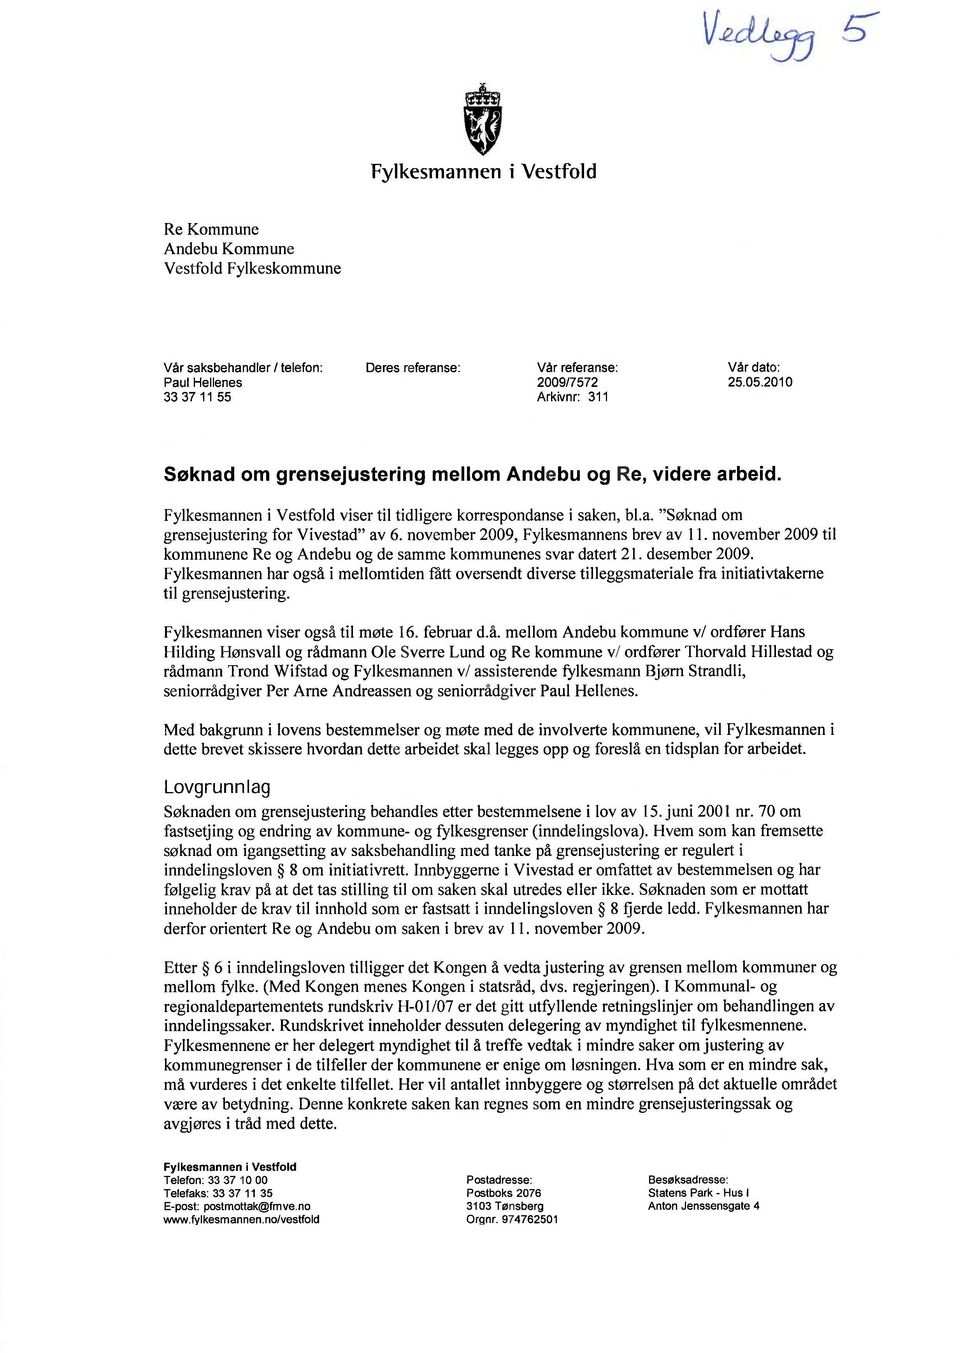 november 2009, Fylkesmannens brev av 11. november 2009 til kommunene Re og Andebu og de samme kommunenes svar datert 21. desember 2009.